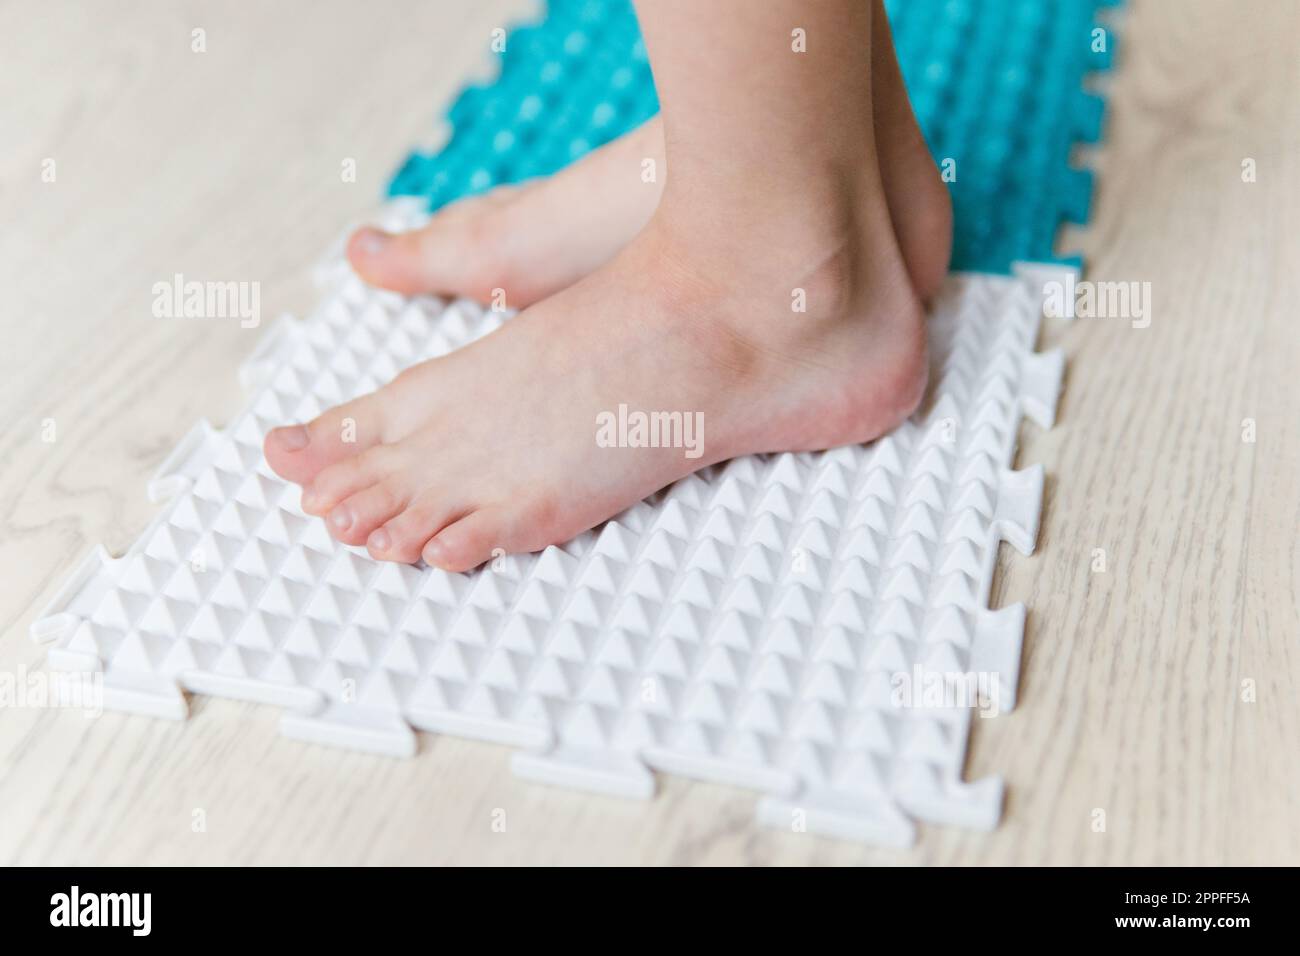 les pieds de l'enfant sur un tapis orthopédique Banque D'Images